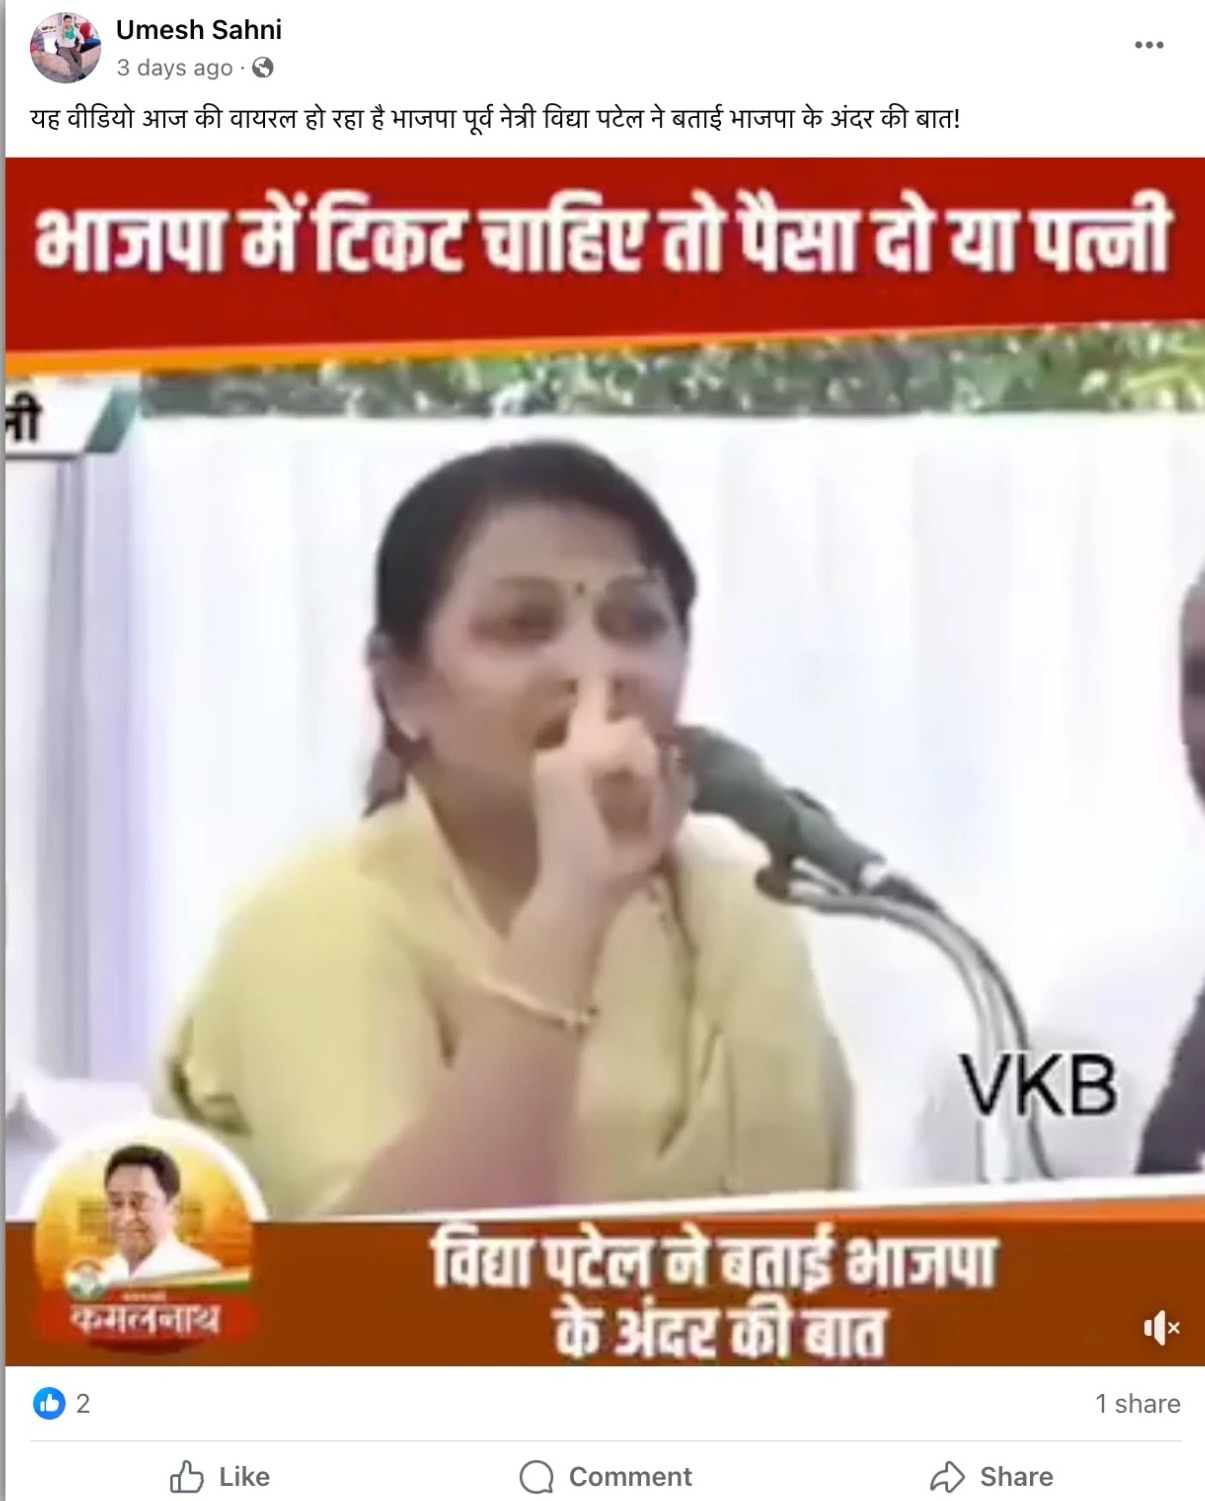 Fact Check: 'दौलत और औरत' की पार्टी बनी BJP, महिला नेता का गंभीर आरोप, जानिए क्या है इस वीडियो की सच्चाई